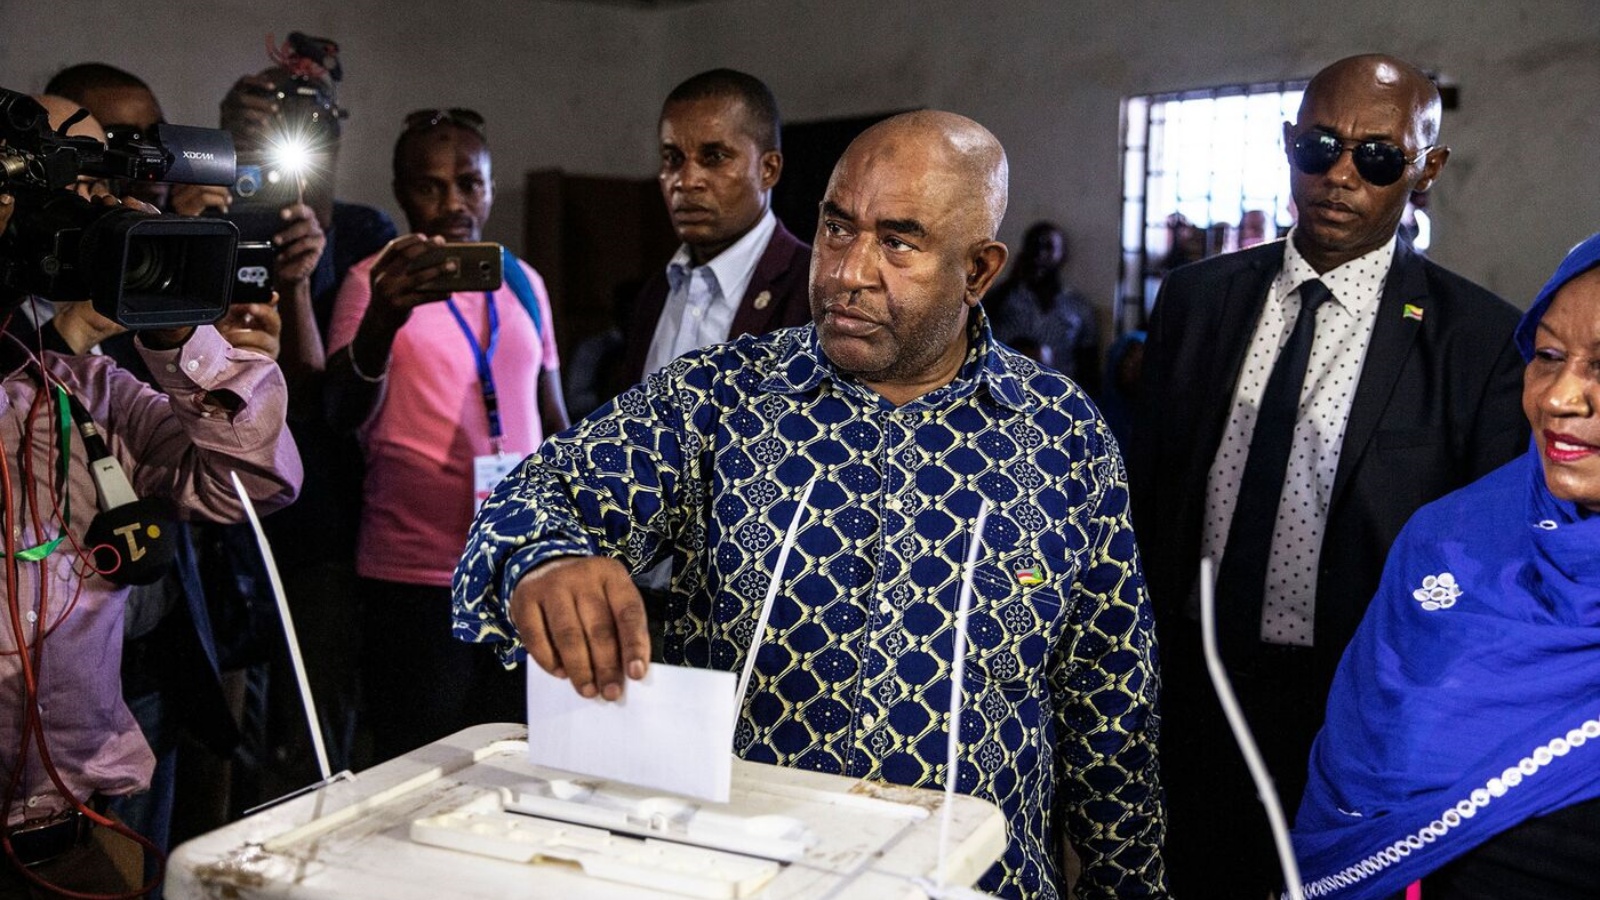 غزالي عثماني يدلي بصوته في الانتخابات الرئاسية في مركز اقتراع في ميتسوجي، في 24 آذار